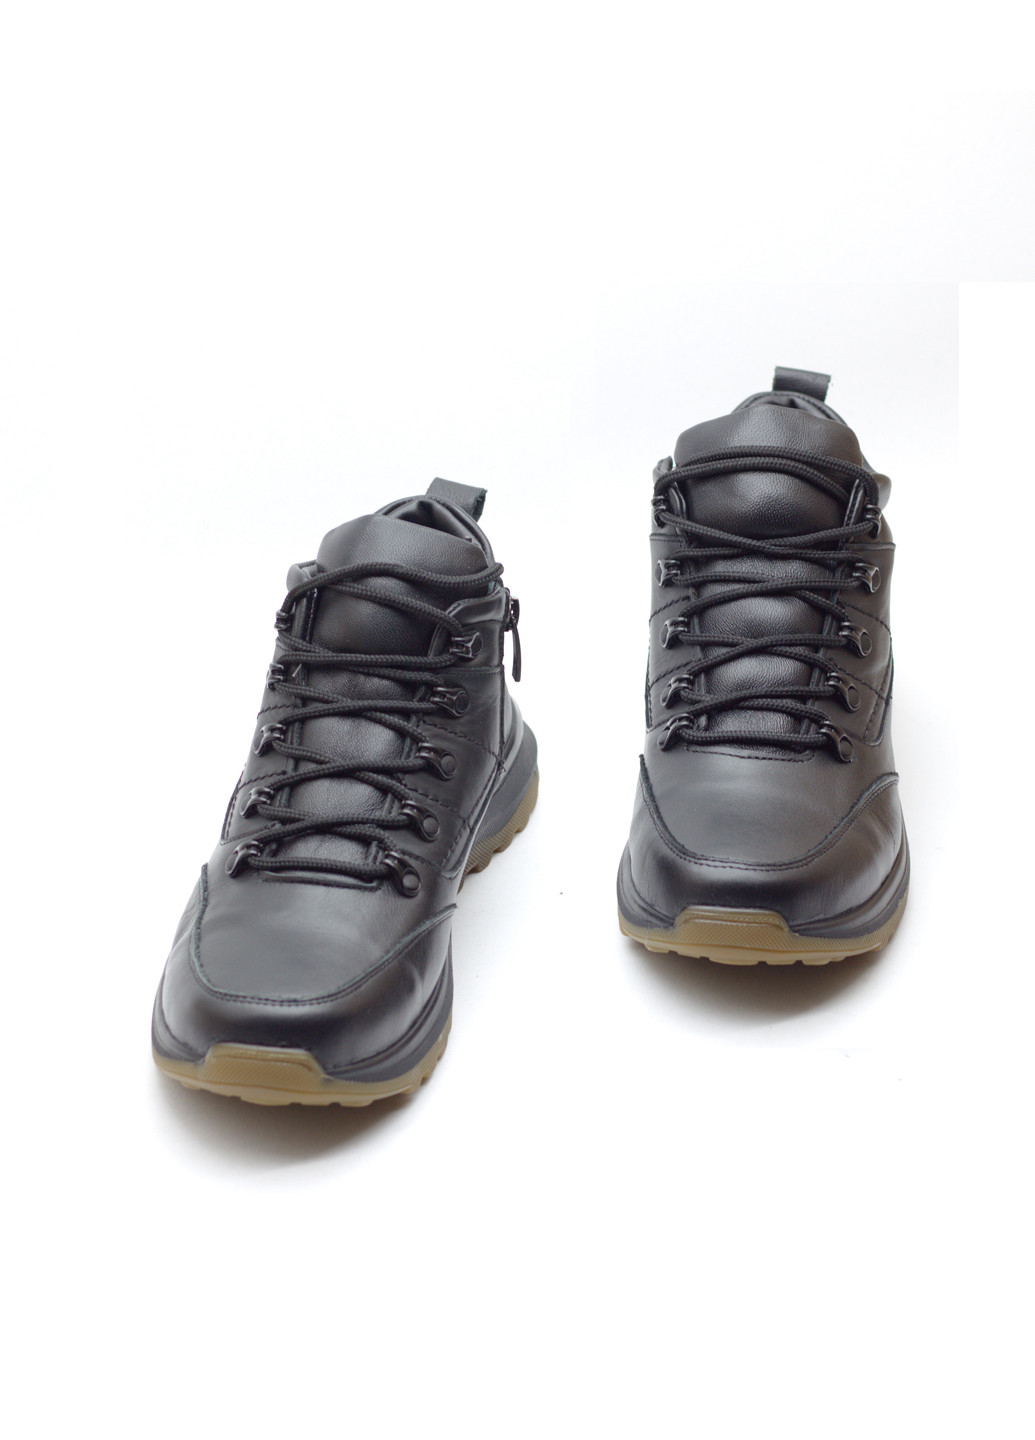 Черные зимние кроссовки мужские зимние кожаные Zlett 3058